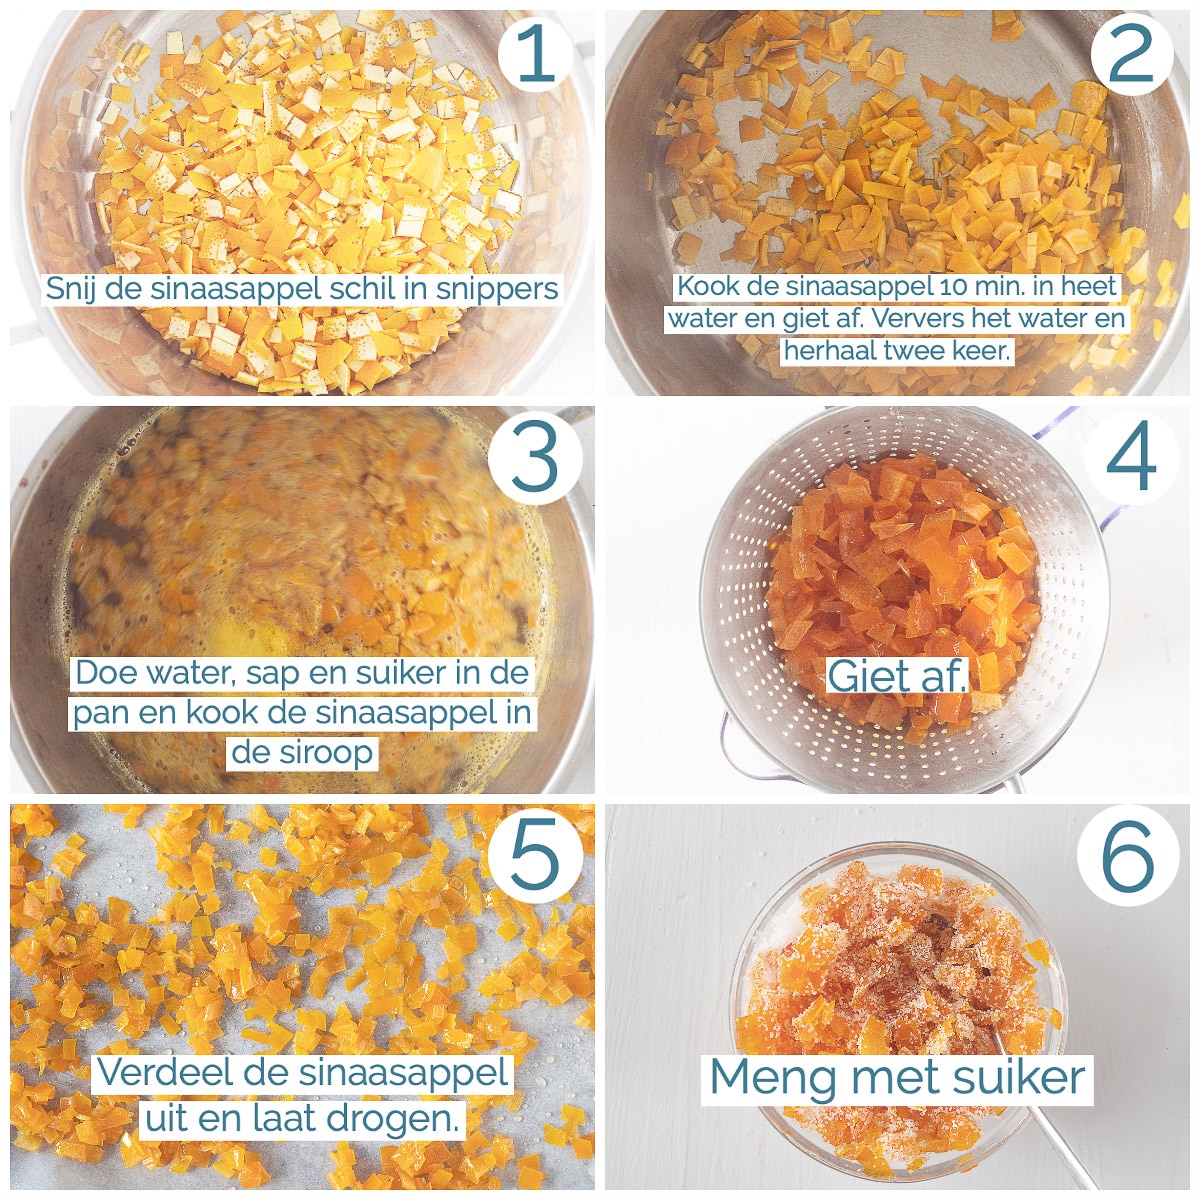 In zes foto's de bereiding van gekonfijte sinaasappelschil